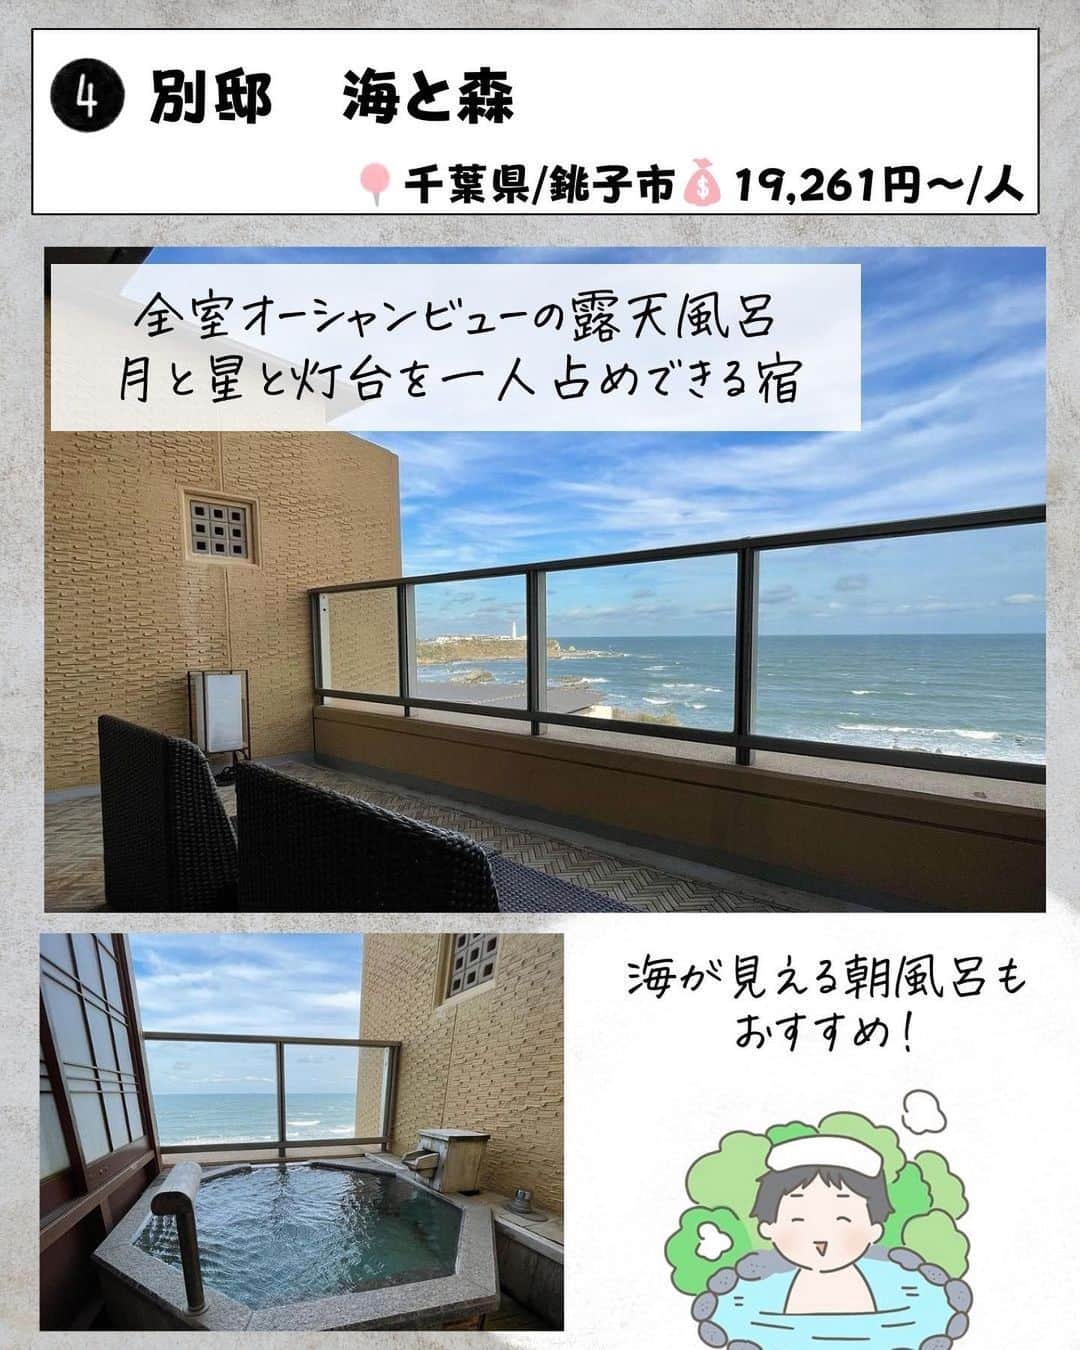 ぴち家さんのインスタグラム写真 - (ぴち家Instagram)「. お得を極めて旅に生きる夫婦、 ぴち家（@travelife_couple）です。 ⁡ 今回は 「カップルでいきたい露天風呂つき宿　関東編」 の特集です。  ゆっくり、のんびり入れる露天風呂って 最高だよね～✨☺️   東京なのに山里にいるような宿や、 大海原を眺めながら、露天風呂に入れる宿。 どれもこれも迷っちゃう！！  今回は二人でゆっくりしたいカップルにオススメの 関東の宿を紹介するよ～✨   「いってみた～い！」 そんなホテルがあったらコメントで教えてね☺️ ✨   ⁡ ※ホテル価格は楽天トラベルで検索した最安値を記載しています。 時期により変動があるため参考程度としてください！ ⁡ 【𝕚𝕟𝕗𝕠𝕣𝕞𝕒𝕥𝕚𝕠𝕟𓏗𓏗】 ❶ 是空 －ZEKUU－ 📍千葉県鴨川市太海浜24-1 （写真:@mika.travel.insta様より）  ❷ 由縁別邸 東京代田 📍東京都世田谷区代田2-31-26 ⁡（写真:@yuuki__ono様より）  ❸ ゆがわら風雅 📍神奈川県足柄下郡湯河原町宮上261 （写真:@fuwafuwa_koharubiyori様より）  ❹ 別邸 海と森 📍千葉県銚子市犬吠埼10292-1 ⁡（写真:mayumi_2038様より）  ➎ あたら夜 西伊豆 📍静岡県伊豆市土肥324 （写真:@___a99y様より）  ❻ あらたし みなかみ 📍群馬県利根郡みなかみ町湯原740-3 ⁡（写真:@ayakan555様より）  ➐ 別邸 翠風荘 慶山 📍茨城県行方市浜2796-1 （写真:@sunupi127様より）  ーーーーーーーーーーーーーーーーーー✽ ⁡ ぴち家（@travelife_couple）って？ ⁡ バン🚐で旅してホテルやスポット巡り！ お得旅行が大好きな夫婦です。 ⁡ ✔旅行先やホテル ✔観光スポット・グルメまとめ ✔旅費を作るためのお金の話を発信中𓂃𓈒𓏸 ⁡ ⁡ また本アカウント以外にも、以下を運営しております。 少しでも役立ちそう、応援してもいいと思って 頂ける方はフォローよろしくお願いしますˎˊ˗ ⁡ 📷日常・写真メインの旅行情報 →@travelife_diary （フォロワー4万超） ⁡ 🔰初心者必見のお金・投資情報 →@yuki_moneylife （フォロワー11万超） ⁡ 🎥旅行ムービー発信のTiktok → @ぴち家（フォロワー2.5万超） ⁡ 【テーマ】 「旅行をもっと身近に✈️」 これまで厳しい状況が続いてきた旅行・飲食業界を盛り上げたい！ より多くの人にワクワクする旅行先を知って もらえるよう、またお得に旅行が出来るよう、 夫婦二人で発信を頑張っています。 　 【お願い】 応援して頂けるフォロワーの皆様、及び 取材させて頂いている企業様にはいつも感謝しております！🙇‍♂️🙇‍♀️ お仕事依頼も承っておりますので、 応援頂ける企業・自治体様はぜひ プロフィールのお問合せよりご連絡お願いします。 ⁡ ぴち家(@travelife_couple) ⁡ ✽ーーーーーーーーーーーーーーーーー ⁡ #是空 #由縁別邸代田 #ゆがわら風雅 #別邸海と森 #あたら夜西伊豆 #あらたしみなかみ #別邸 翠風荘 慶山 #客室露天風呂 #ぴちホテルまとめ」7月18日 20時05分 - travelife_couple